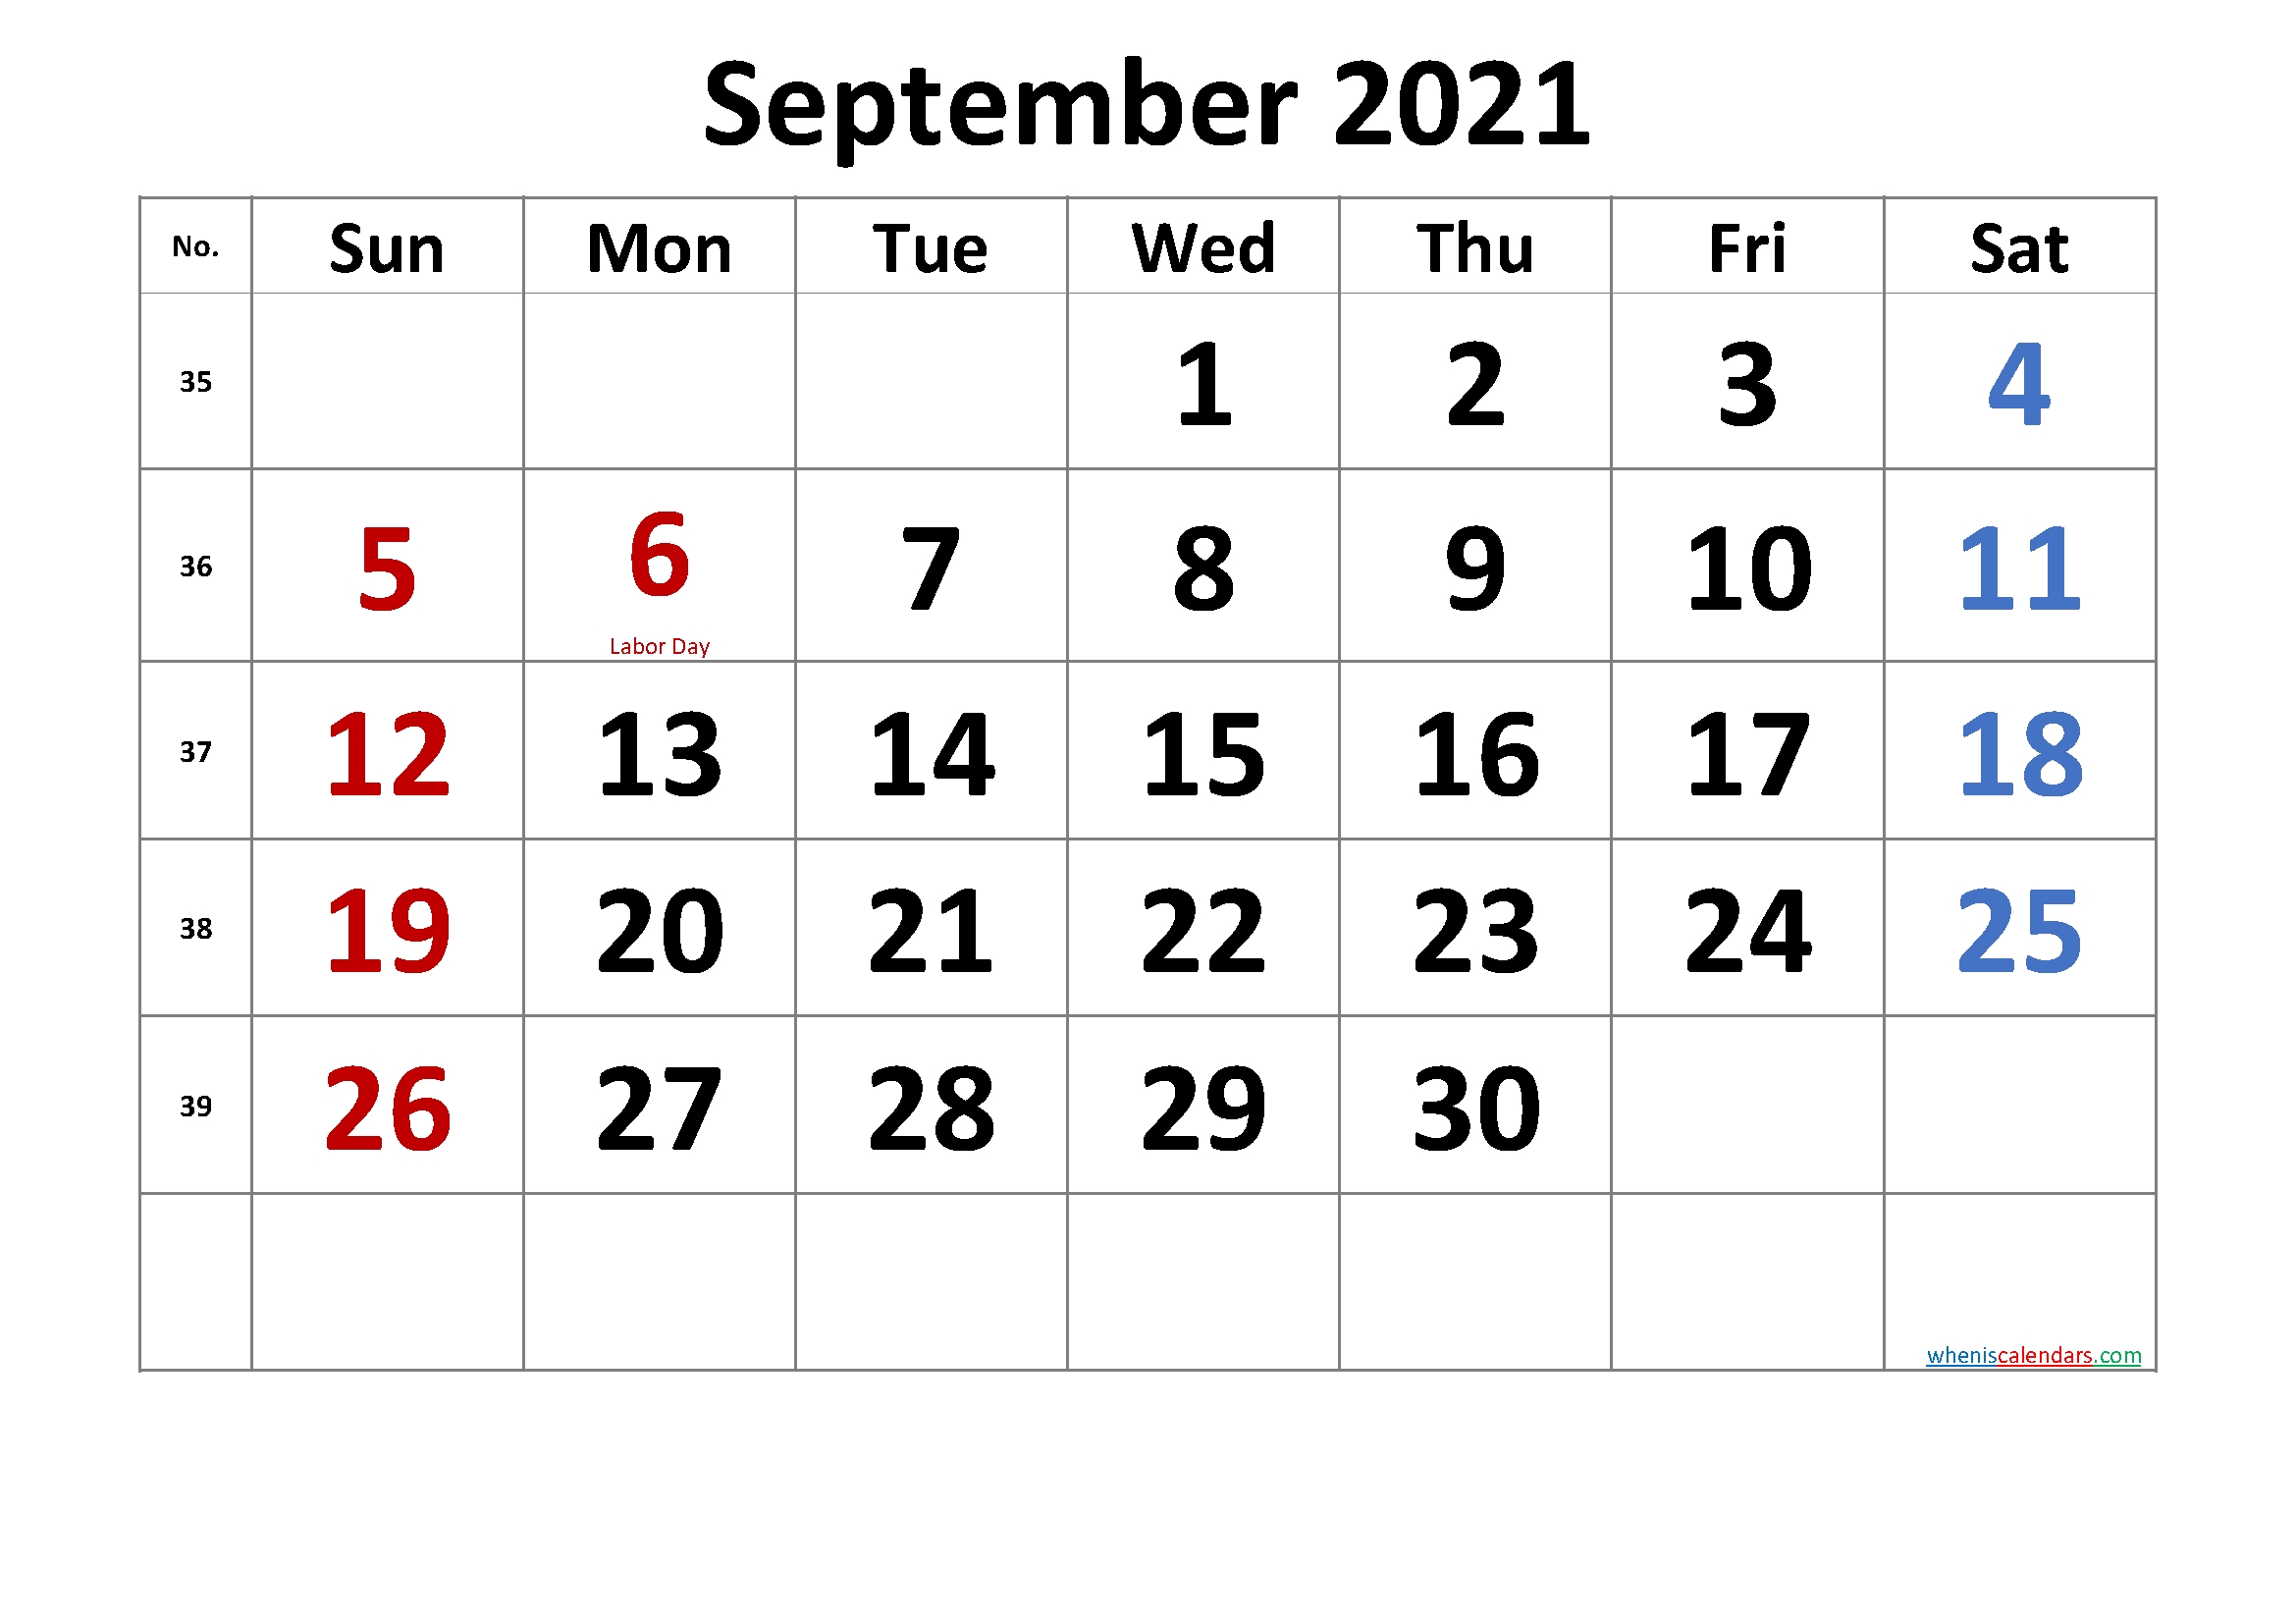 September 2021 Calendar | Calendar Printables Free Blank September 2021 Calendar With Holidays Canada